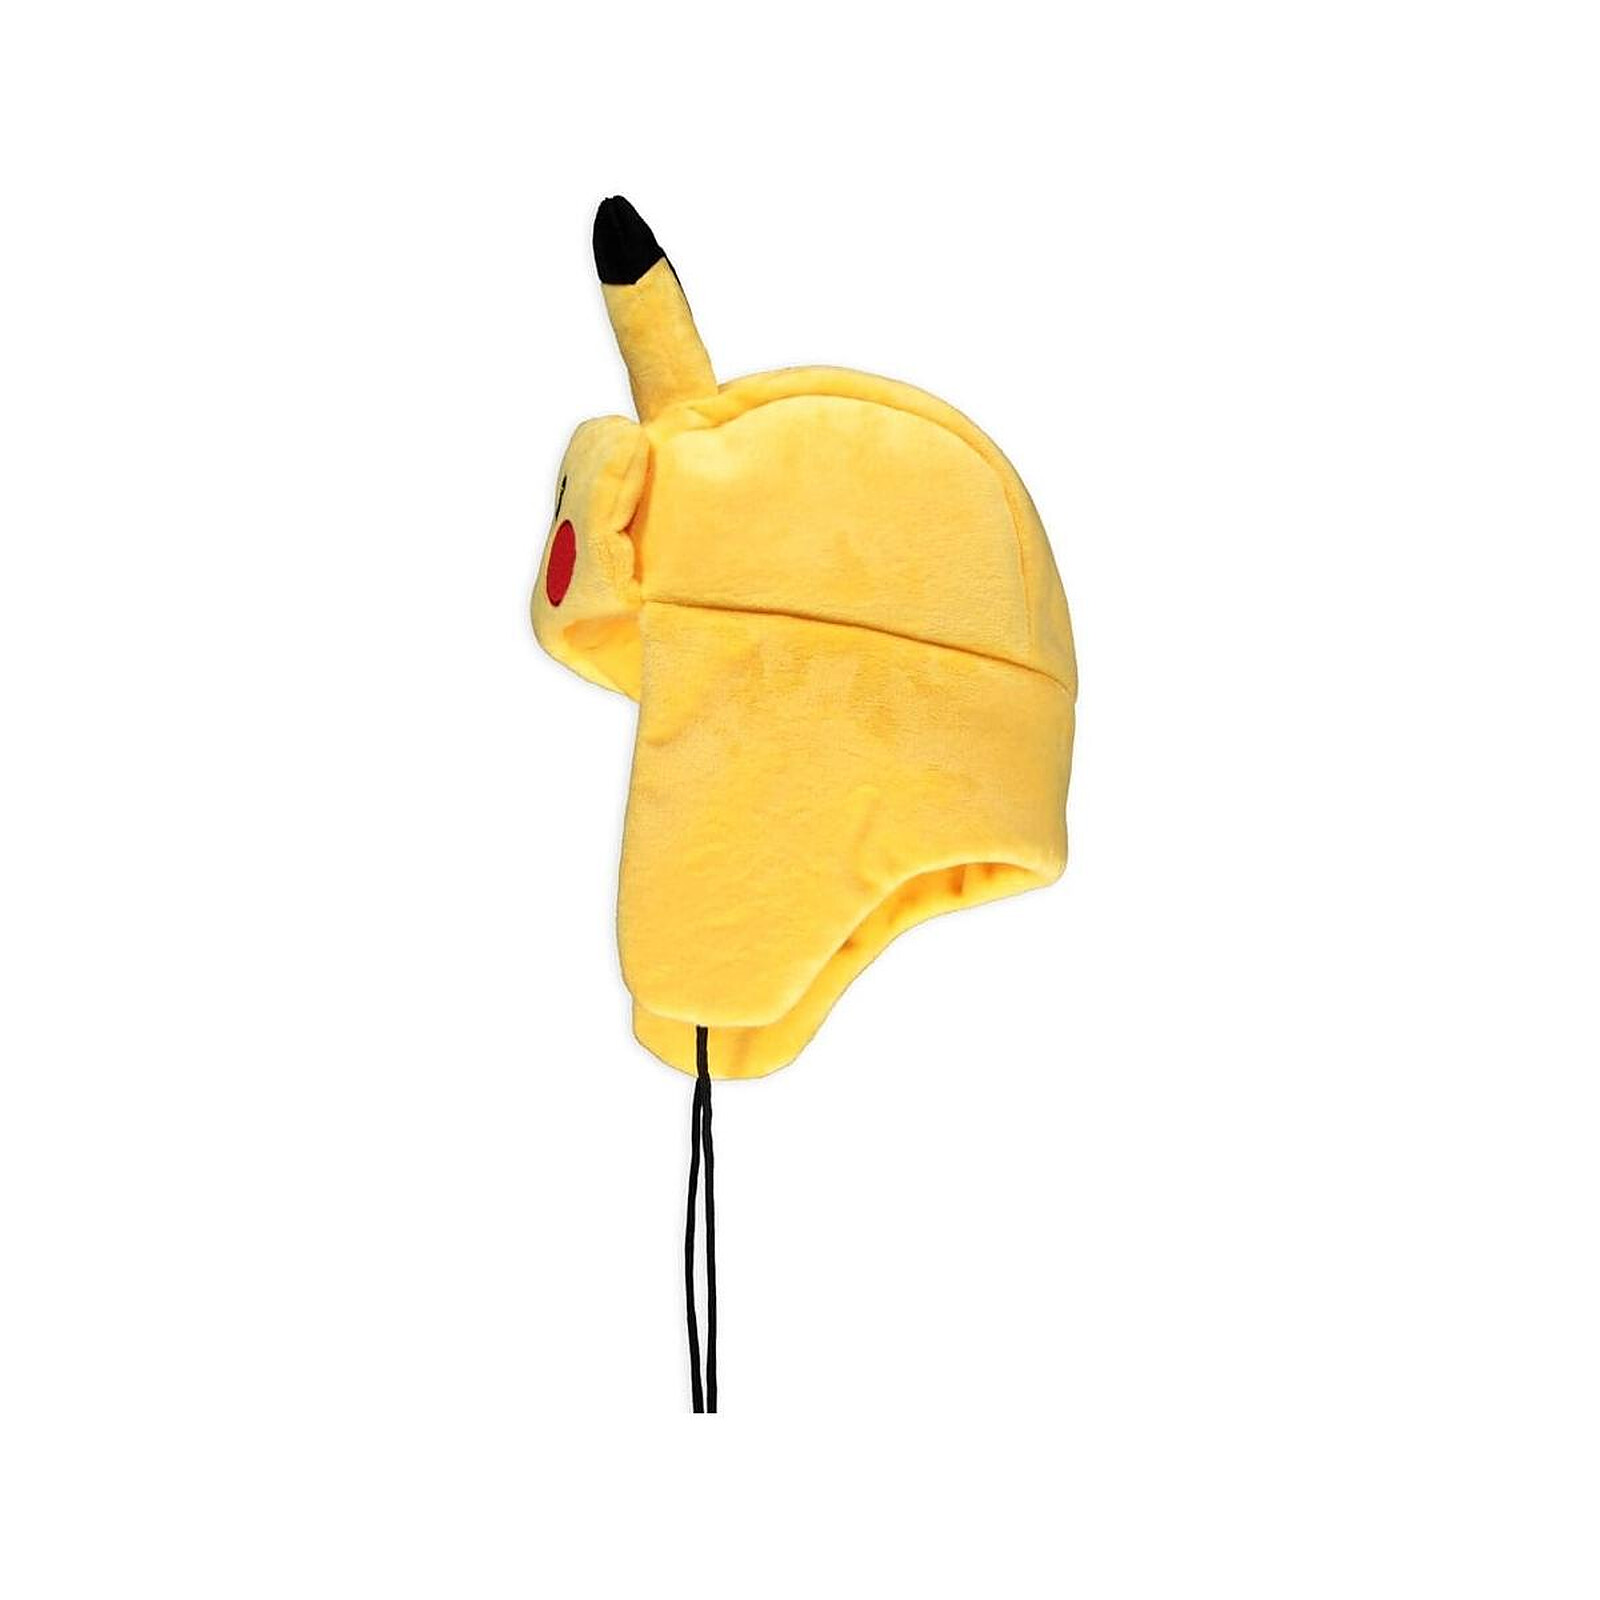 Bonnet - Pokemon - Pikachu With Ears